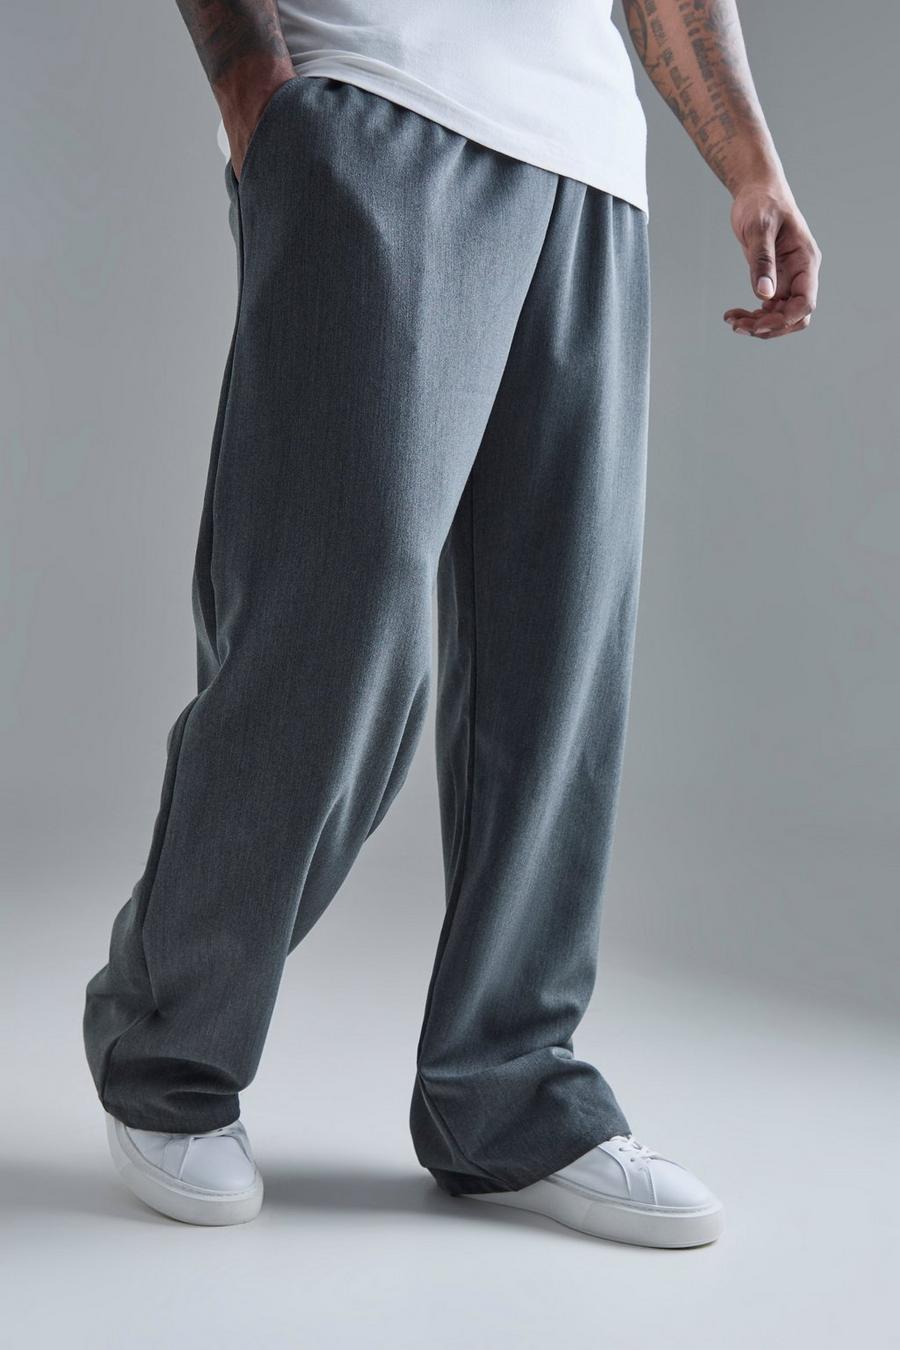 Pantaloni dritti Plus Size Smart con vita elasticizzata, Grey